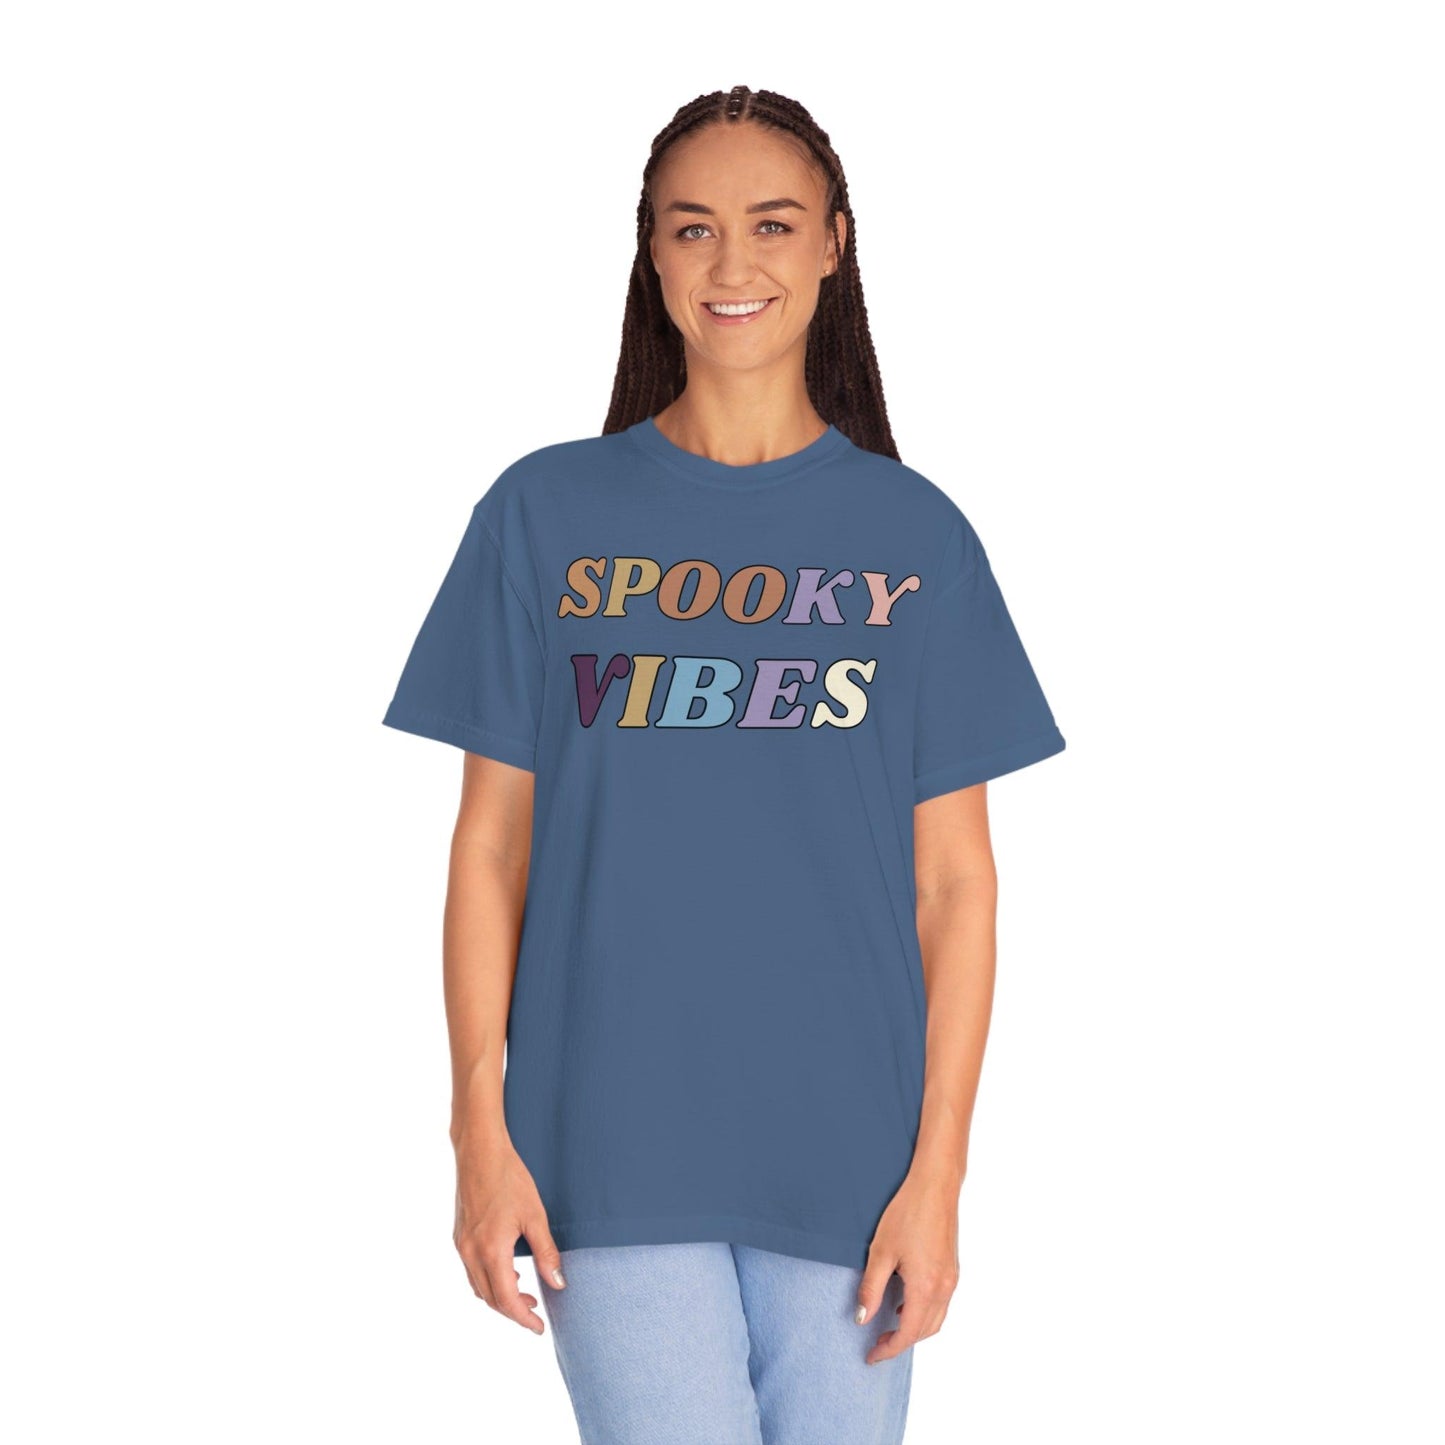 Retro Halloween Tshirt, Spooky Vibes Shirt, Vintage Shirt Halloween Shirt - Cute Fall Shirt